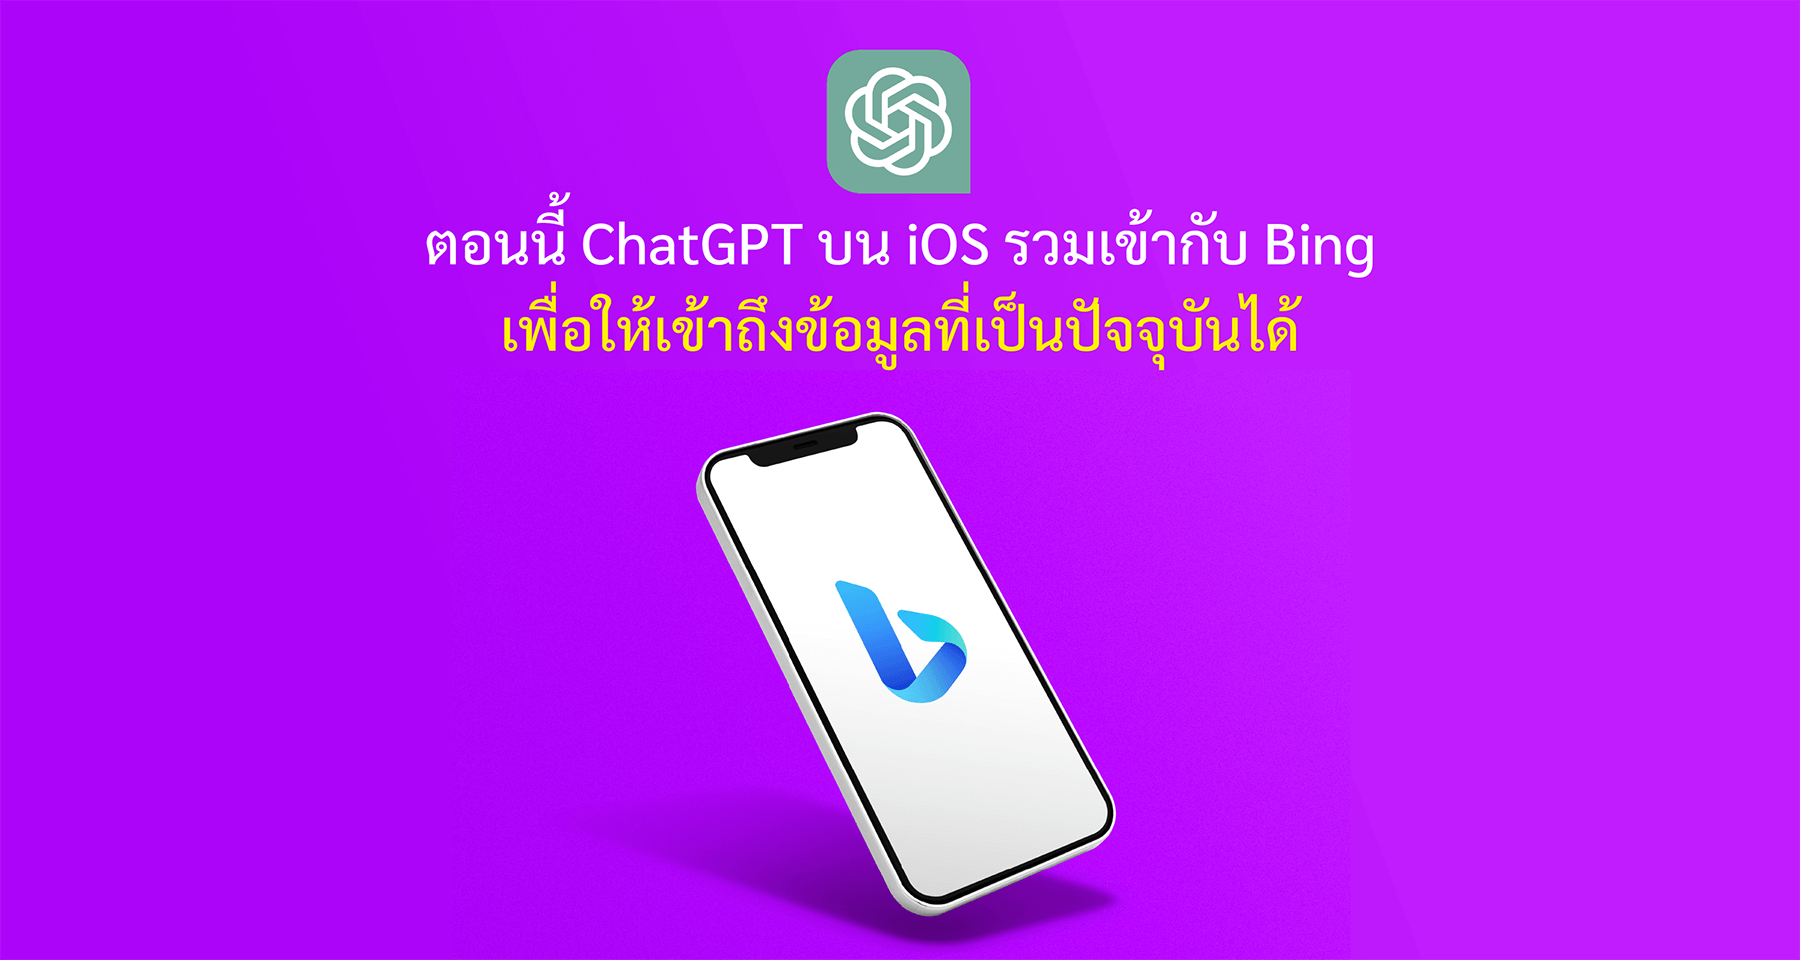 ตอนนี้ ChatGPT บน iOS รวมเข้ากับ Bing เพื่อให้เข้าถึงข้อมูลที่เป็นปัจจุบันได้